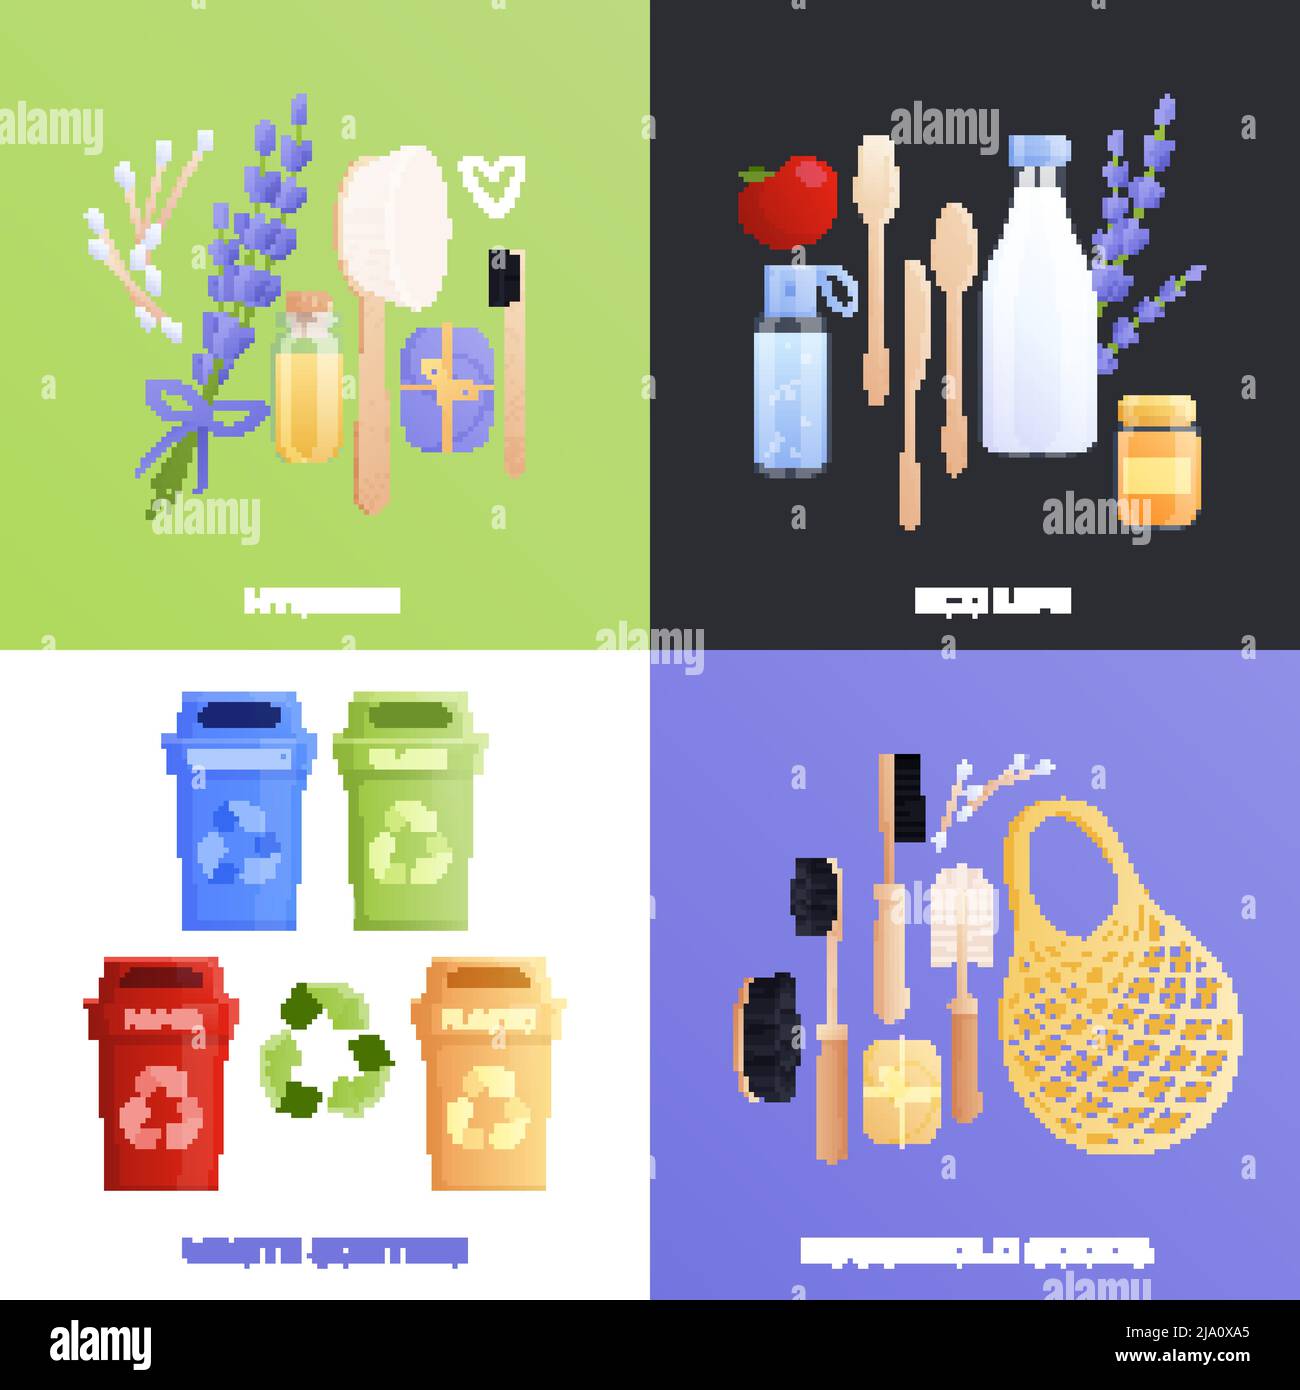 Kit de compositions 2 x 2 Eco goods avec images plates isolées d'objets de tous les jours recyclables avec illustration vectorielle de texte modifiable Illustration de Vecteur